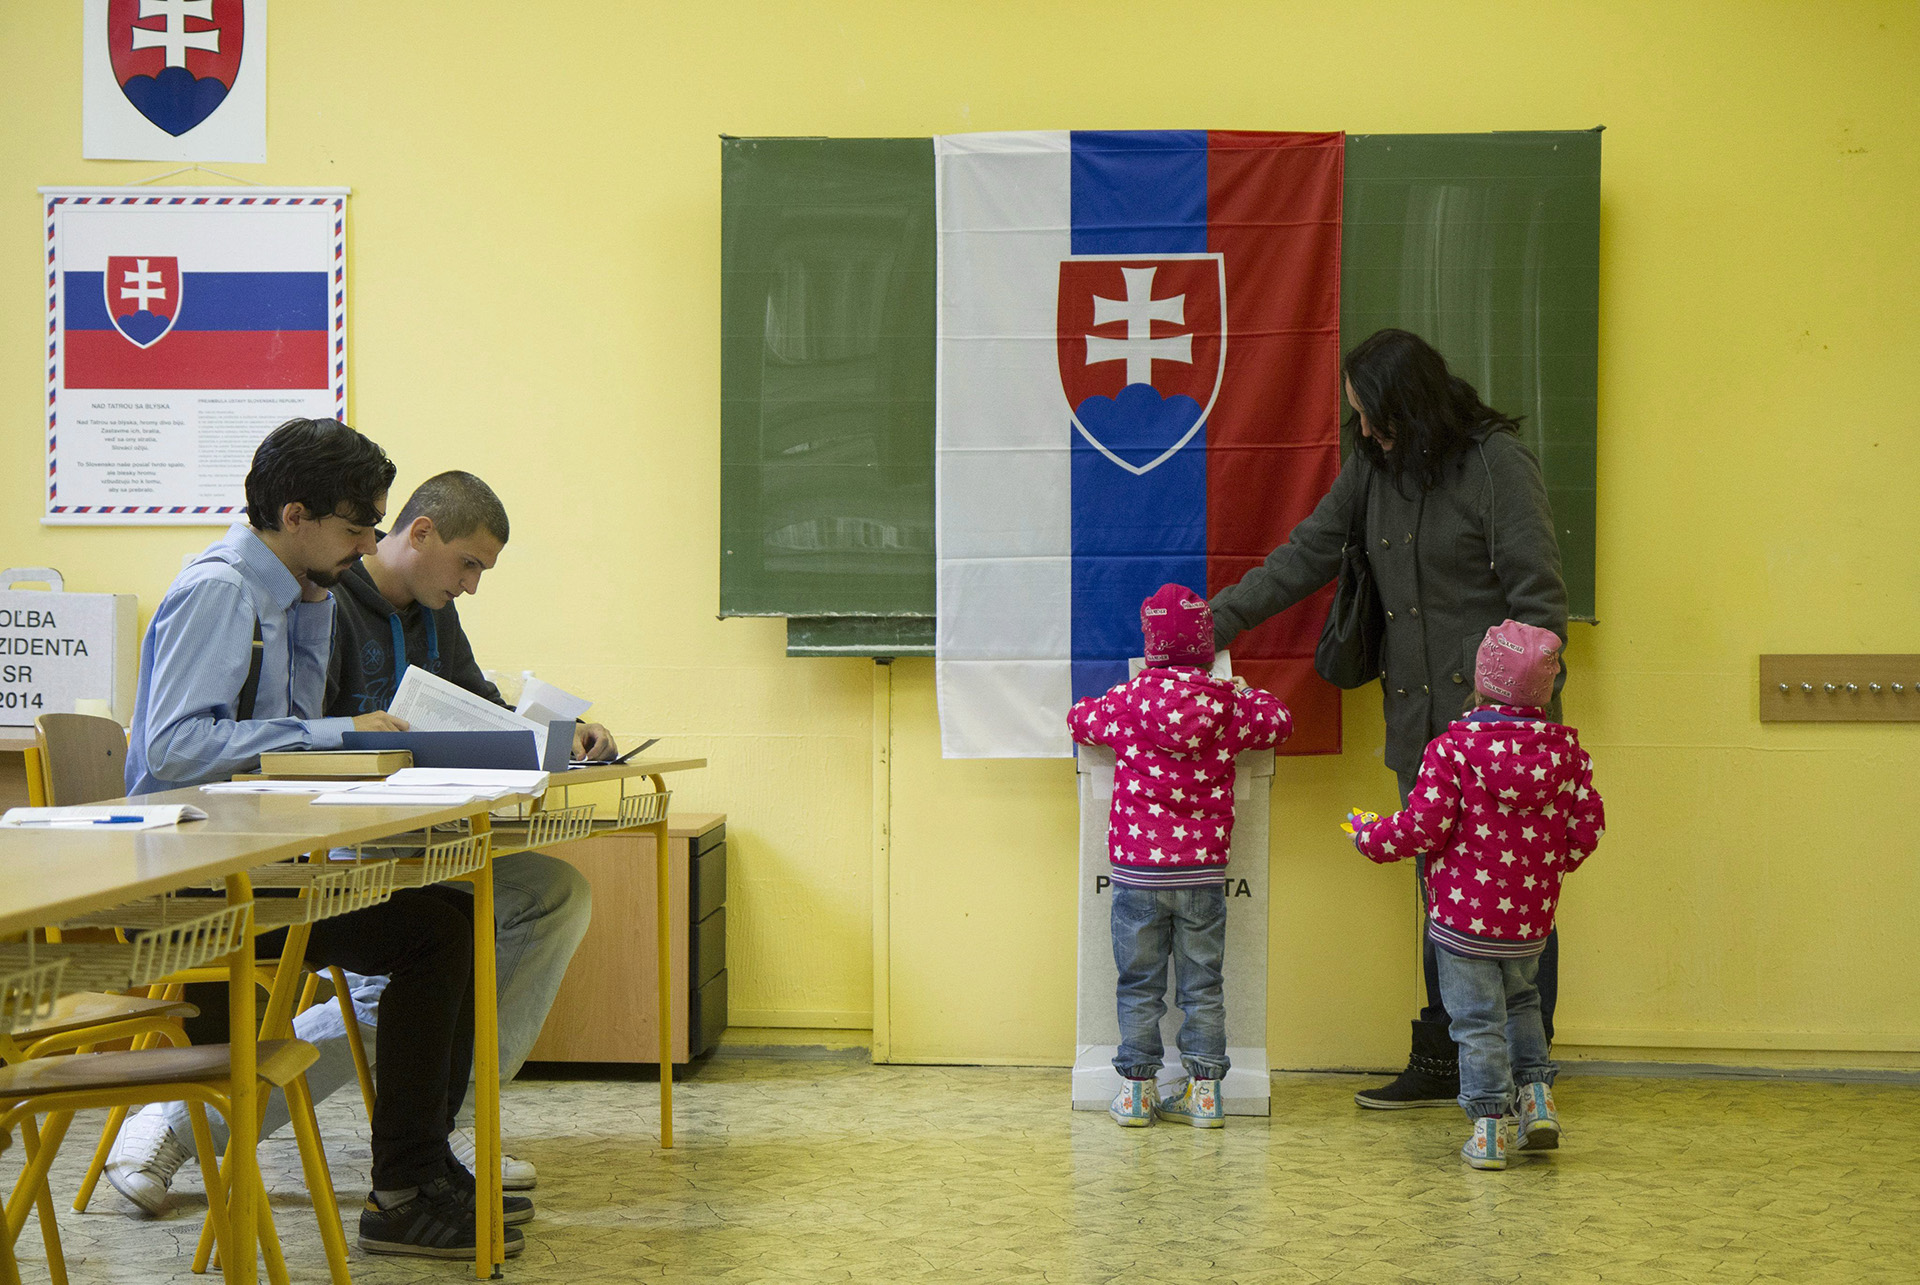 Nincs igazi győztese a szlovákiai választásoknak